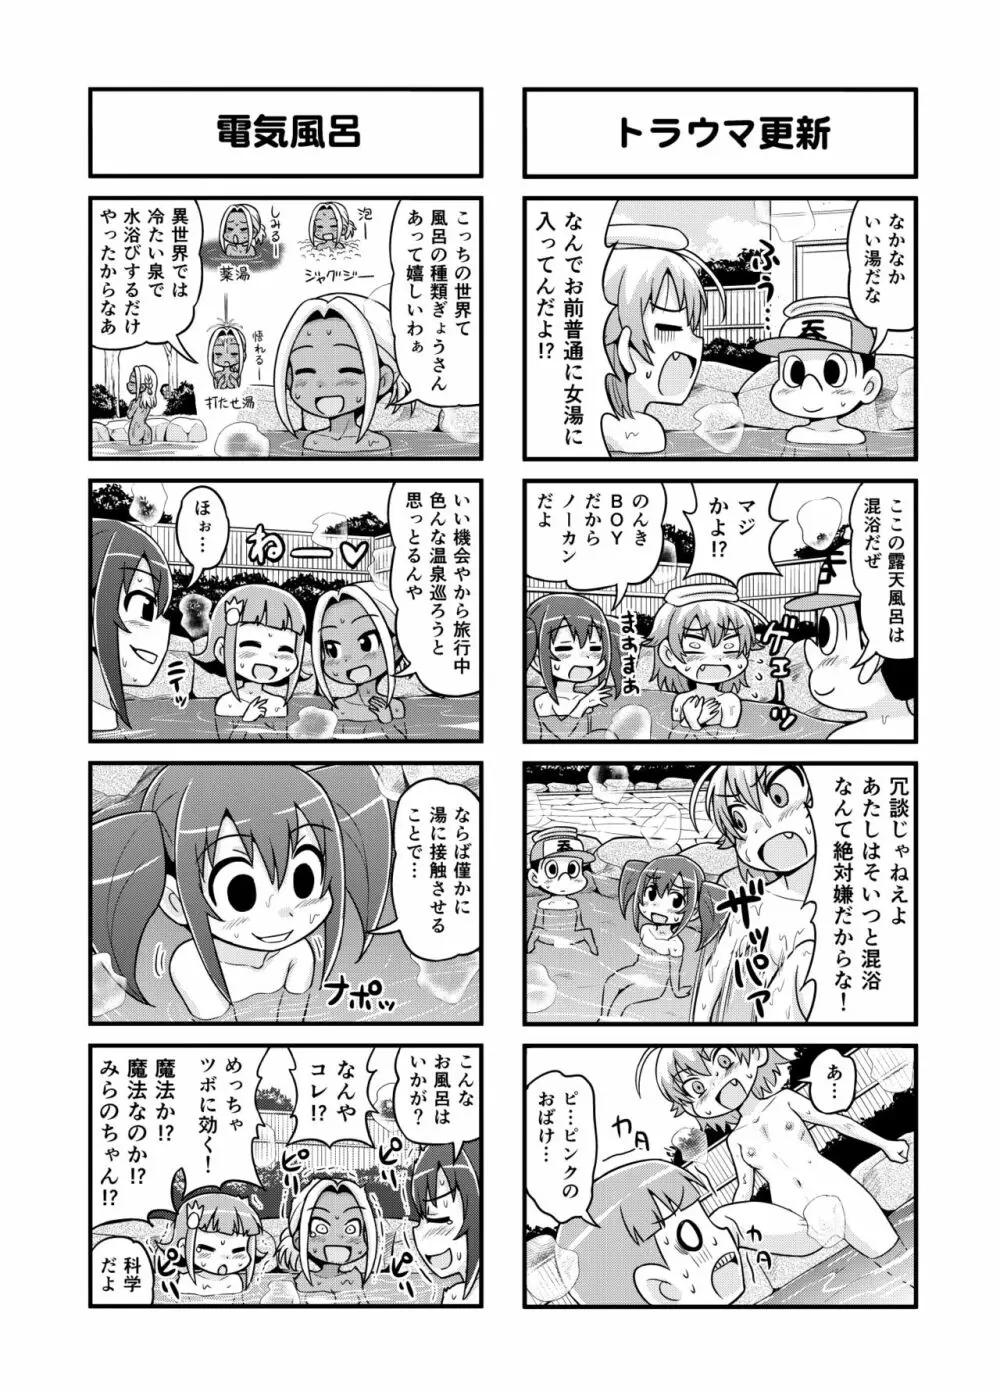 のんきBOY 1-48 138ページ